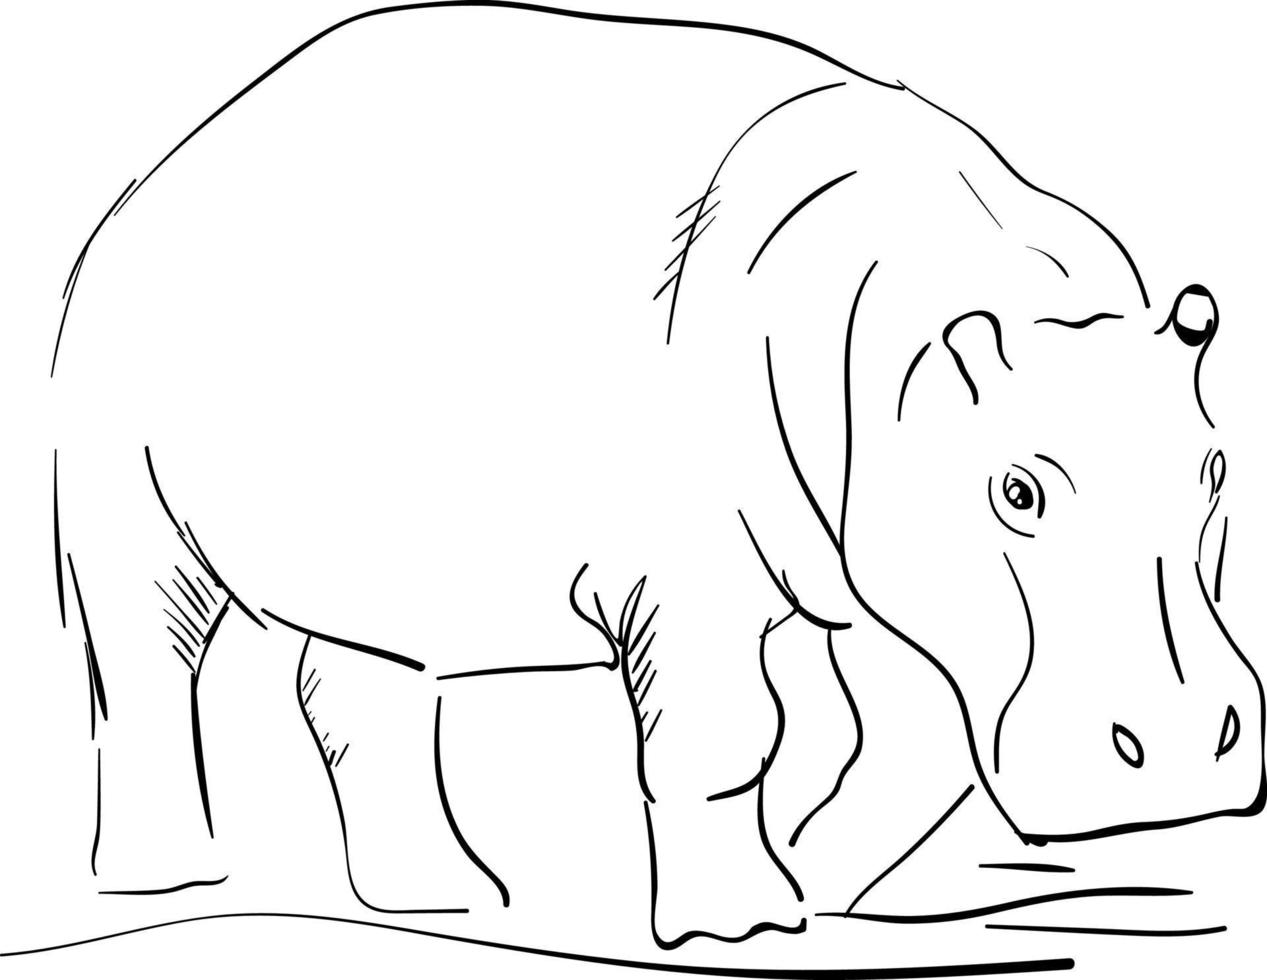 dessin d'hippopotame, illustration, vecteur sur fond blanc.